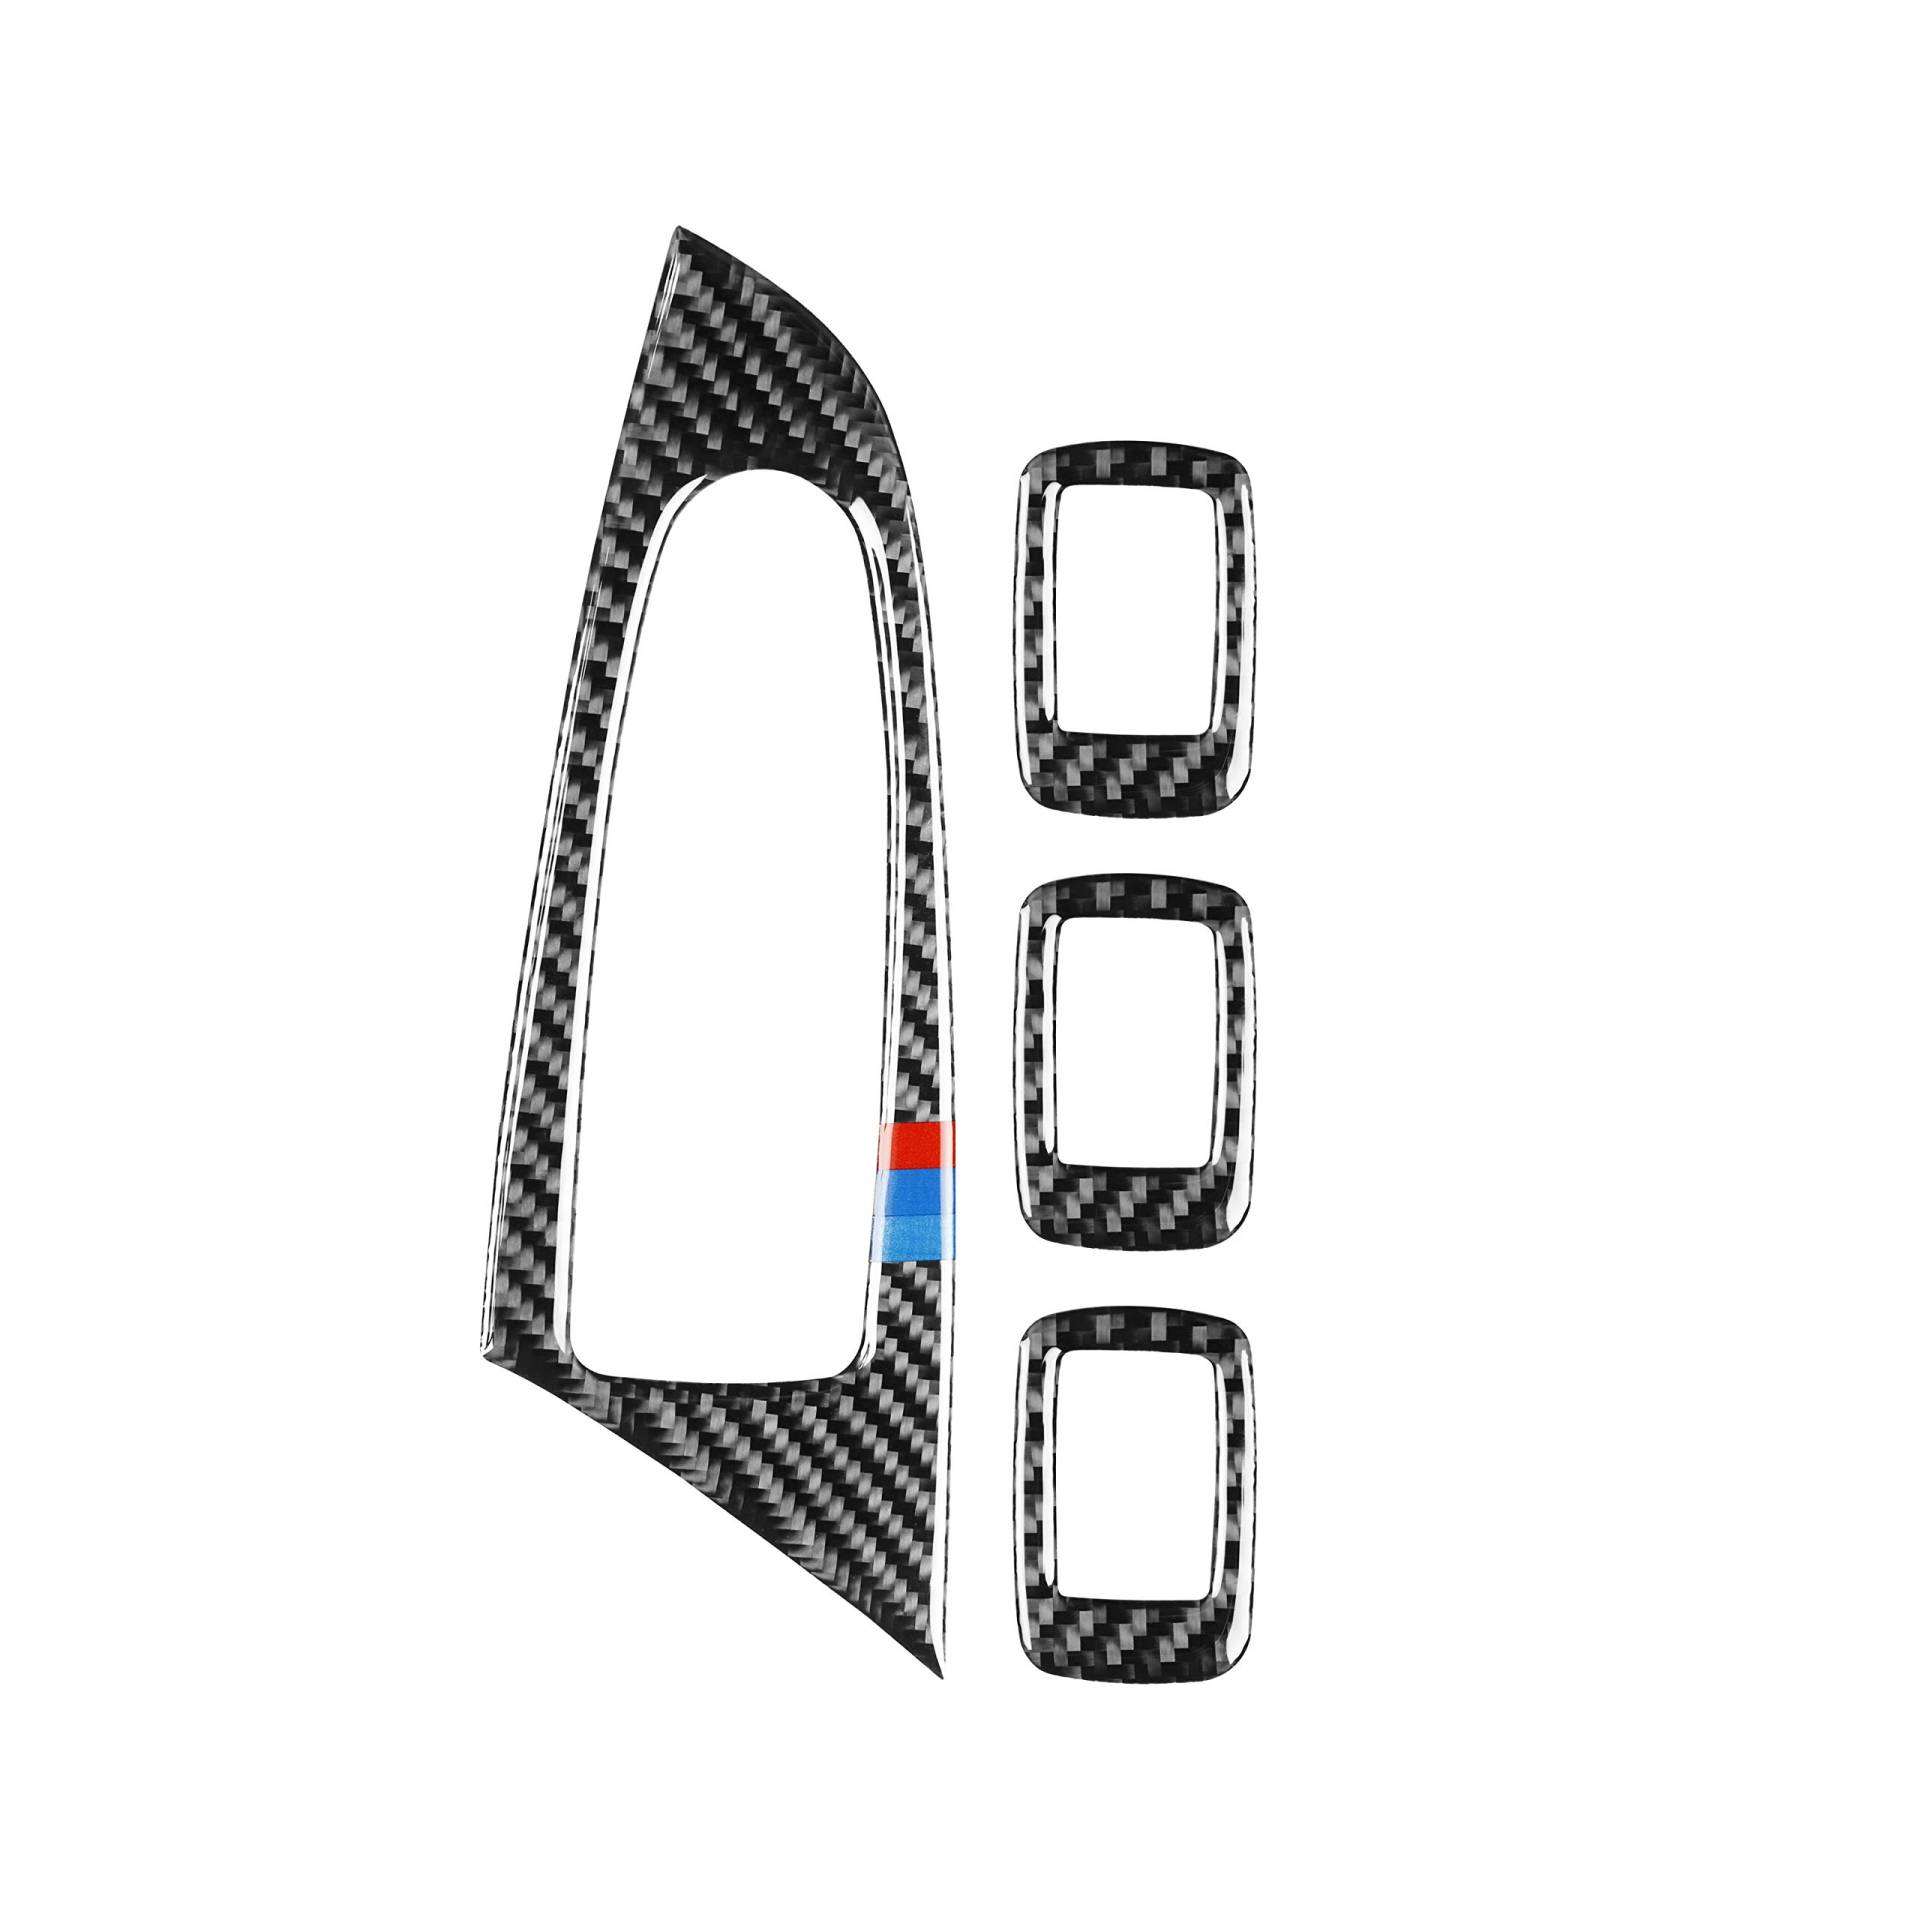 Cabon Fiber Türgriff Armlehne Fenster Lift Panel Rahmen Abdeckung Zierleiste Kappe Kompatibel mit BMW X3 X4 F25 F25 2011-2017 (M, Typ A) von Generic